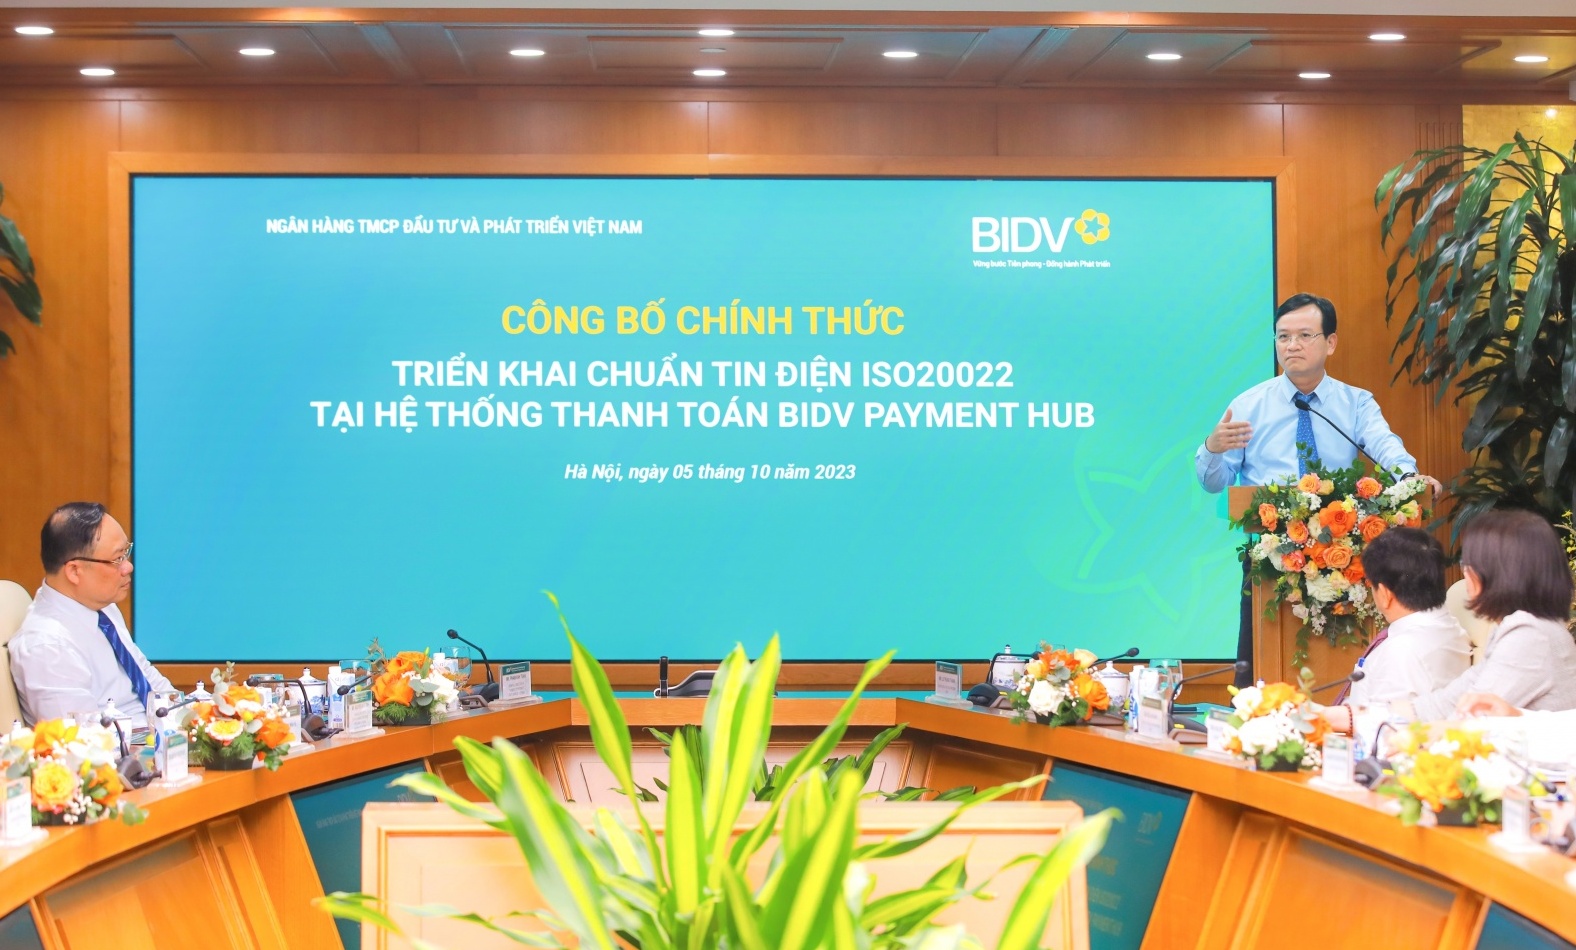 BIDV triển khai chuẩn tin điện ISO20022 tại hệ thống thanh toán BIDV Payment Hub